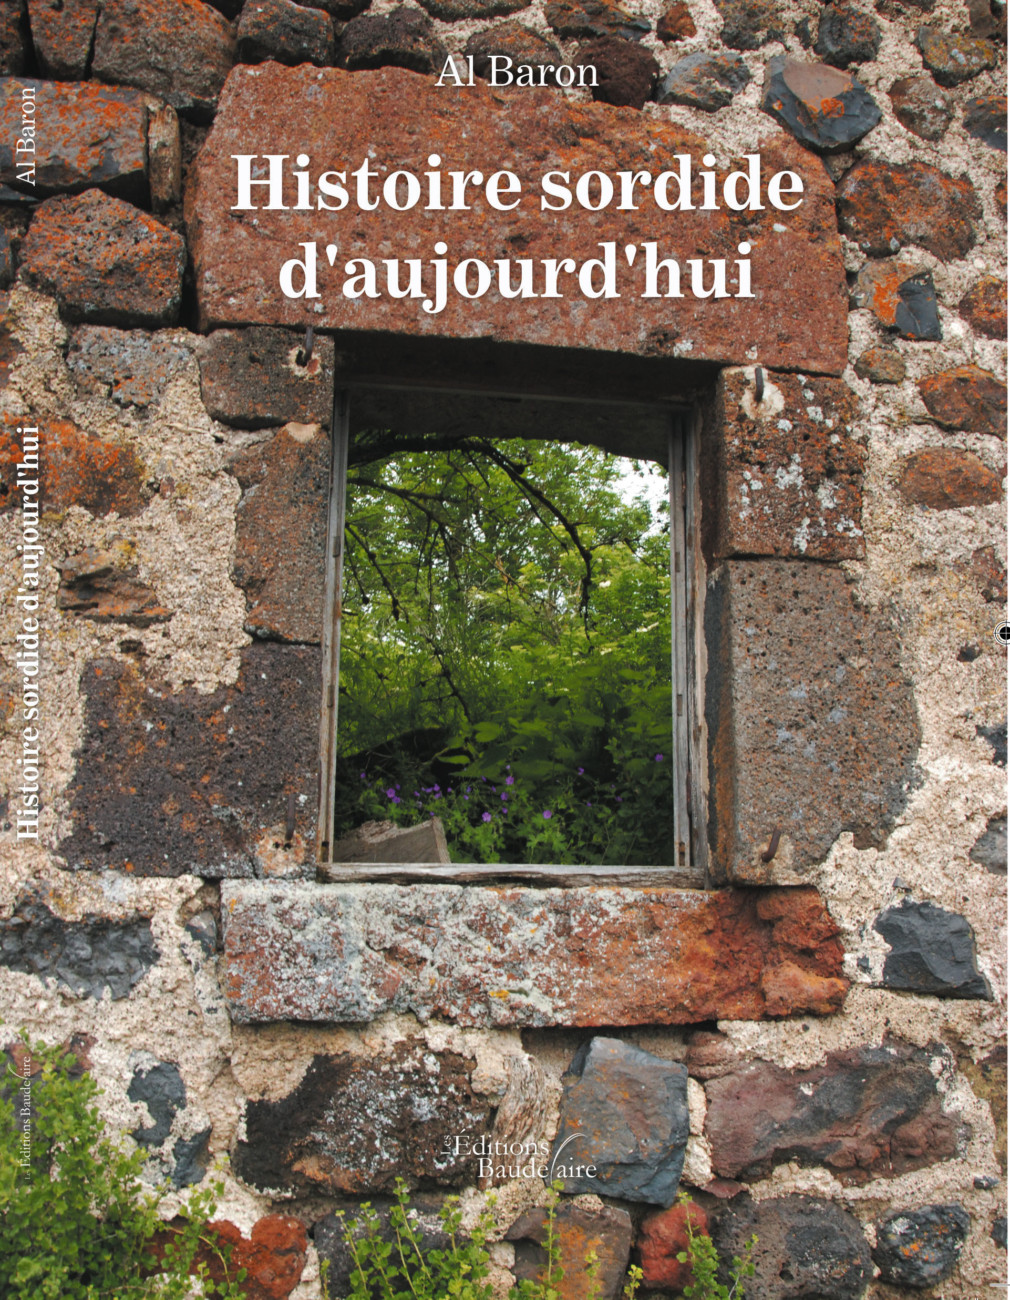 Roman : Histoire sordide d’aujourd’hui – Editions Baudelaire par Al Baron